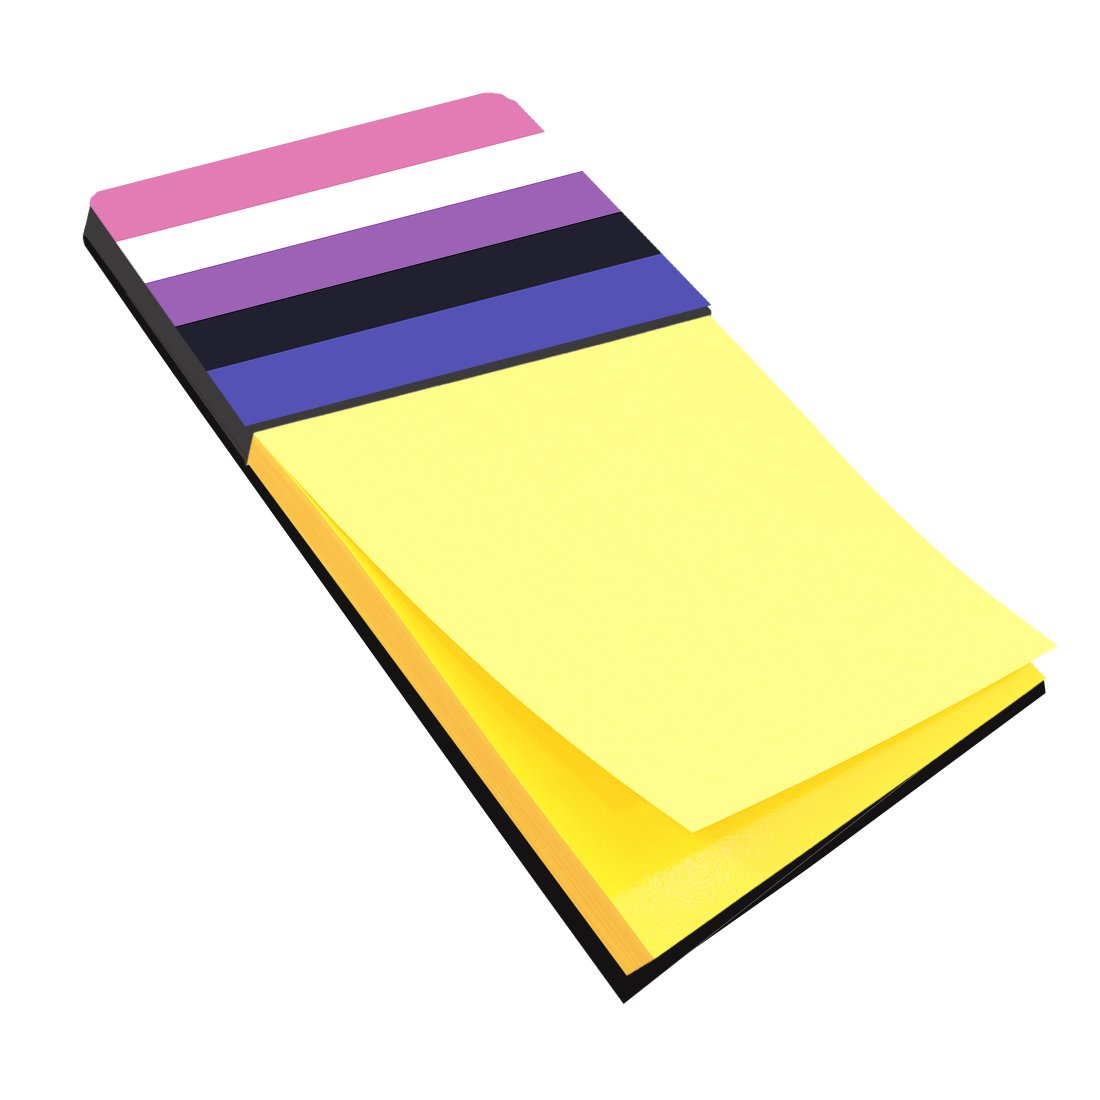 Buy this Genderfluid Pride Sticky Note Holder